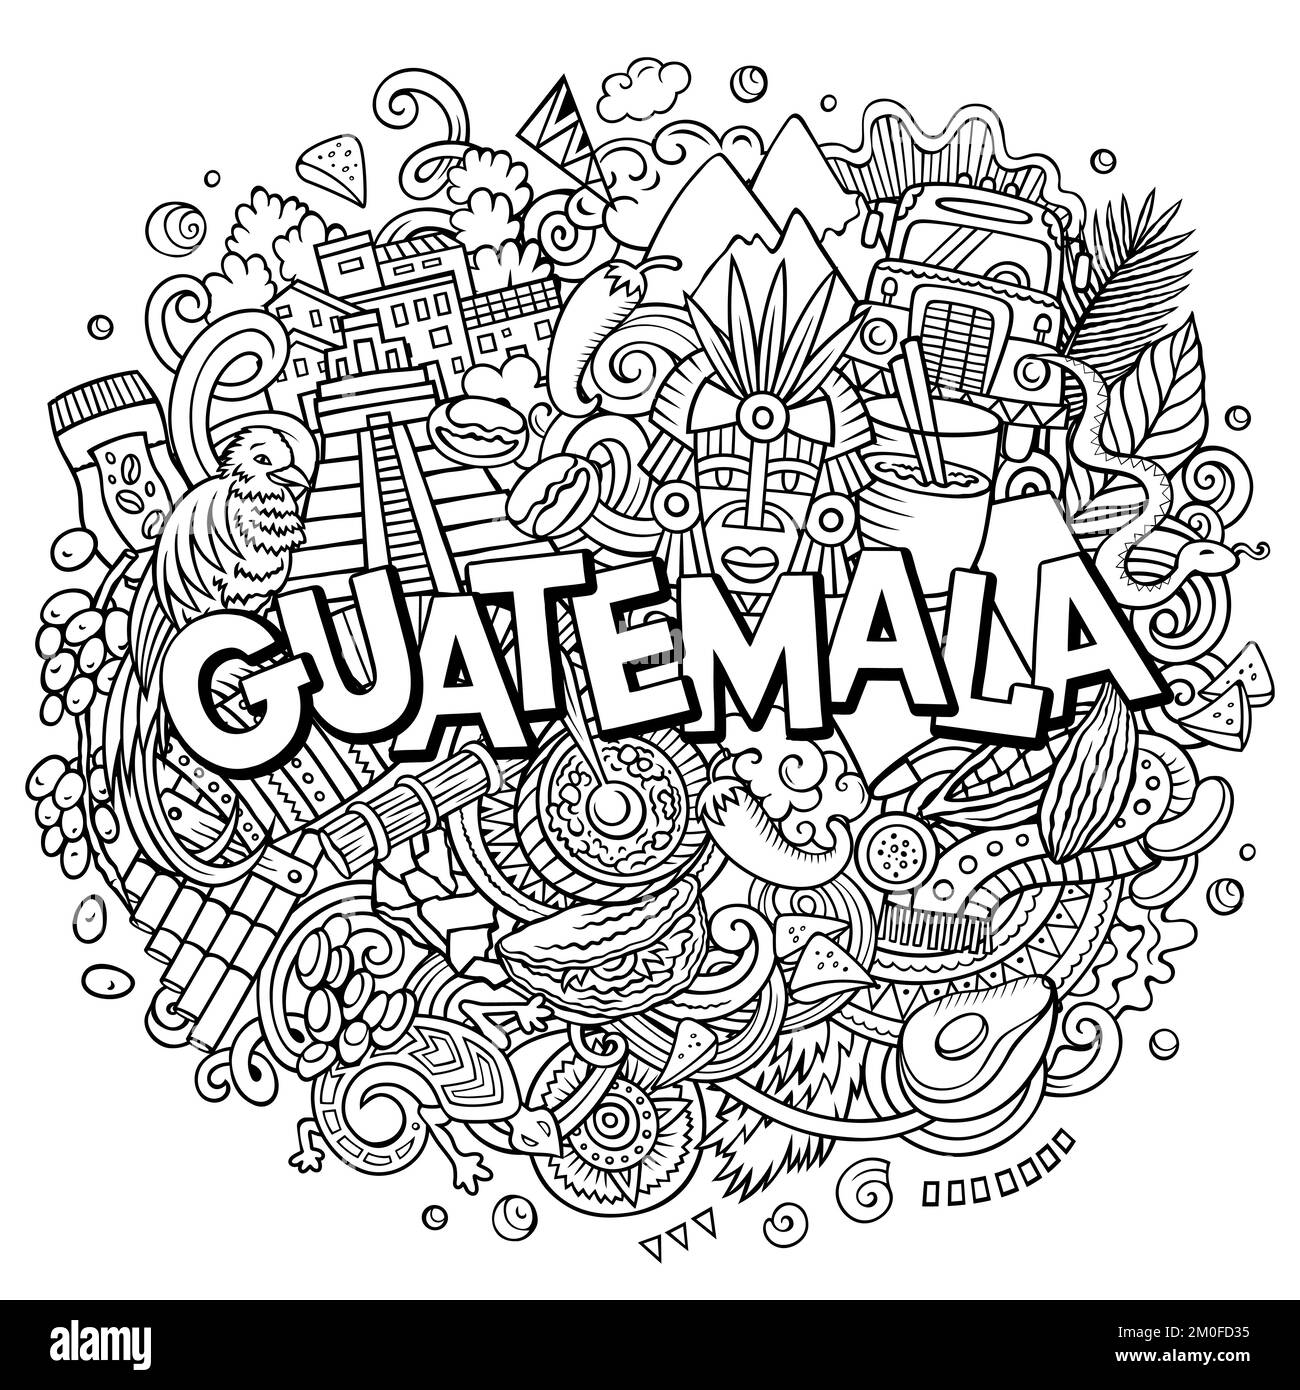 Guatemala-Zeichentrickfilm-Doodle-Illustration. Komisches Design Stock Vektor